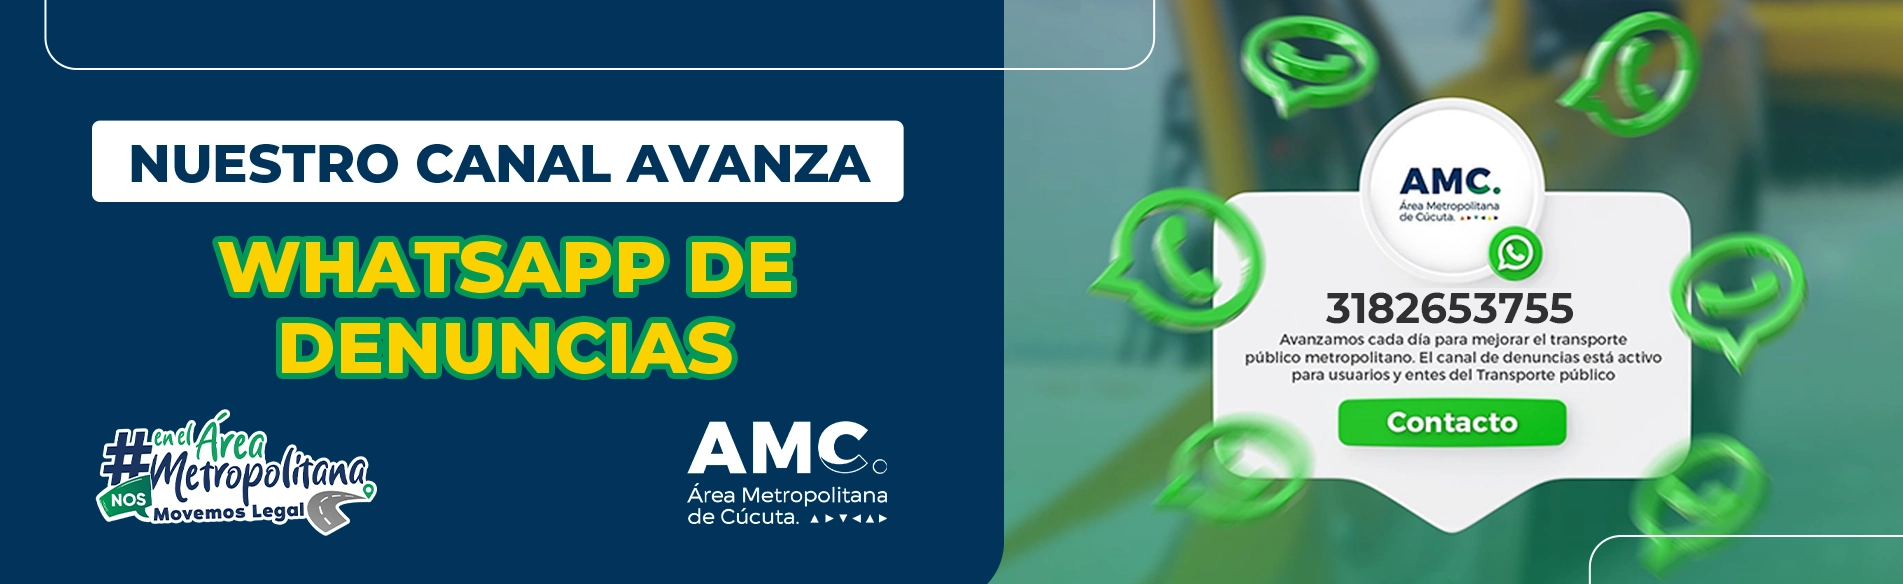 Imagen tipo banner con el nuevo numero para comunicación con el canal de denuncias del área metropolitana de Cúcuta